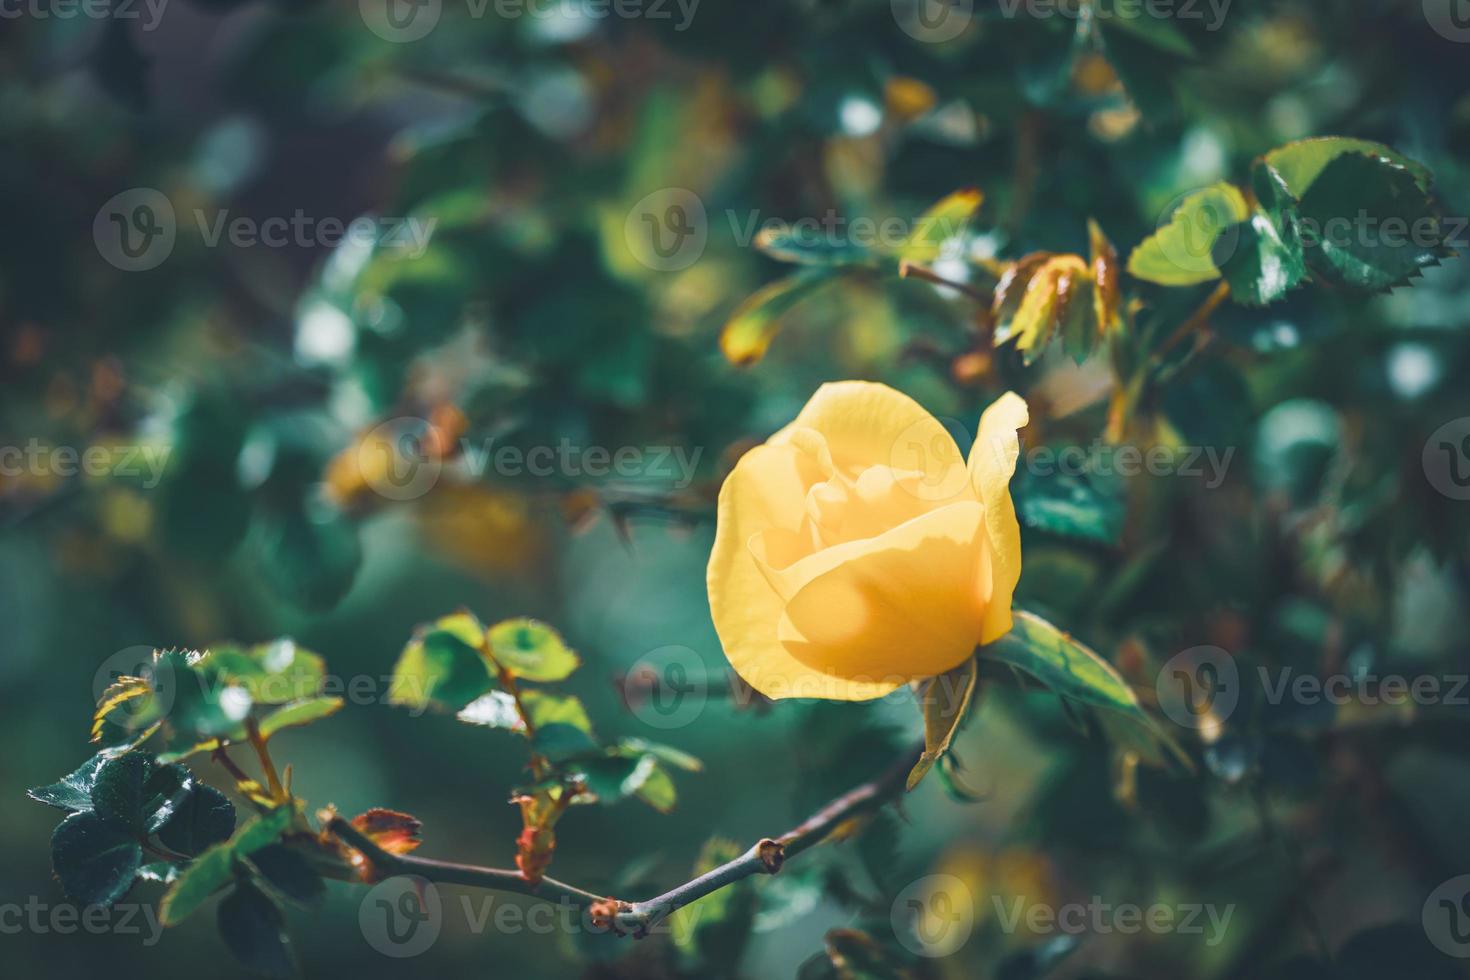 fleur jaune d'un mini rosier photo